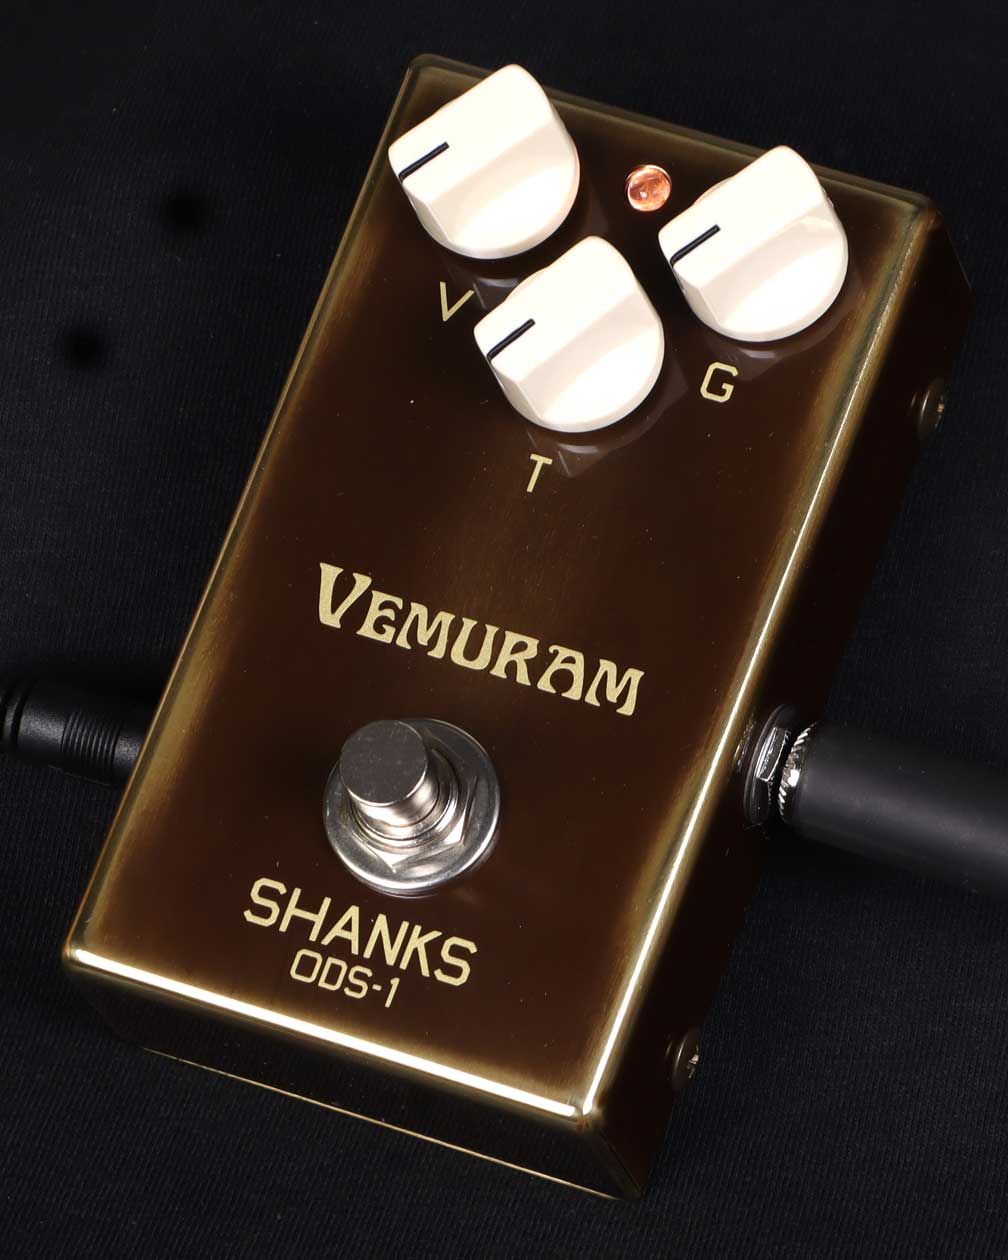 VEMURAM   SHANKS ODS-1 ヴェムラム オーバードライブ